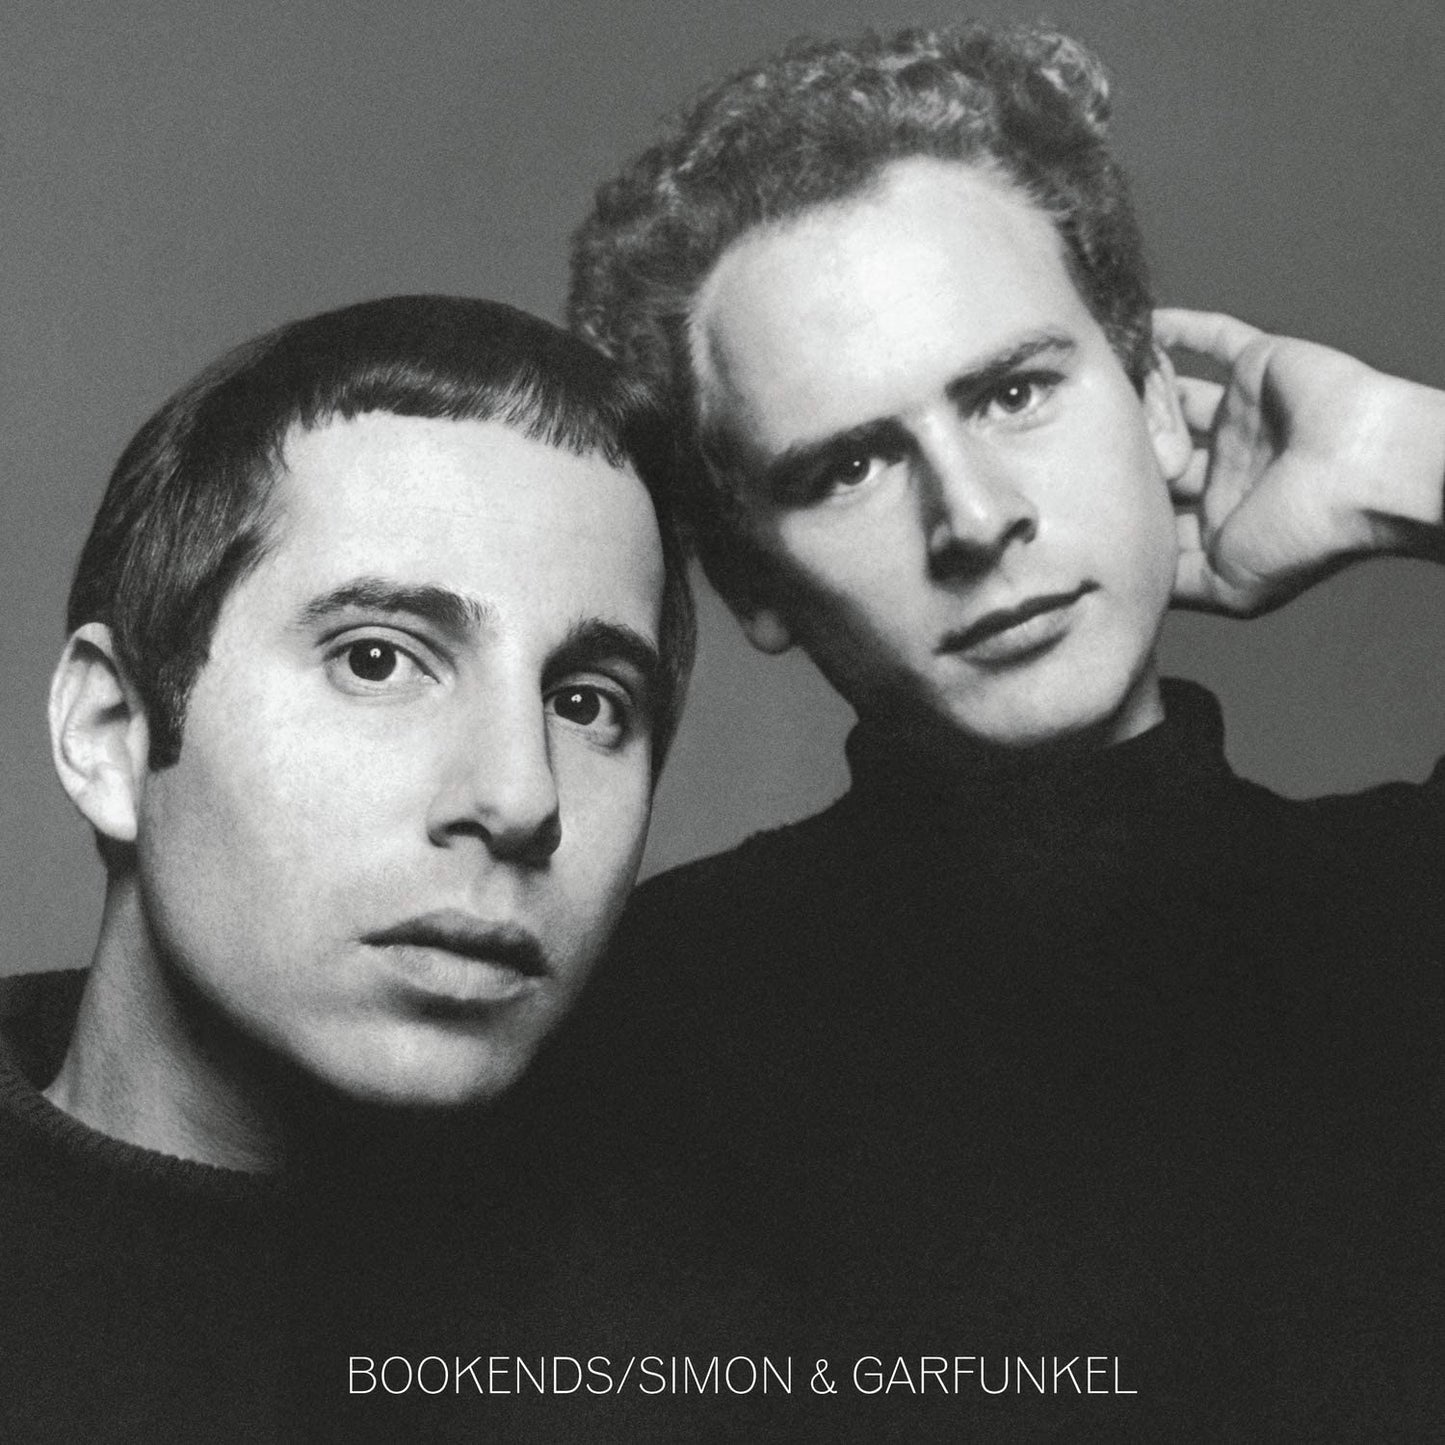 Simon & Garfunkel Bookends